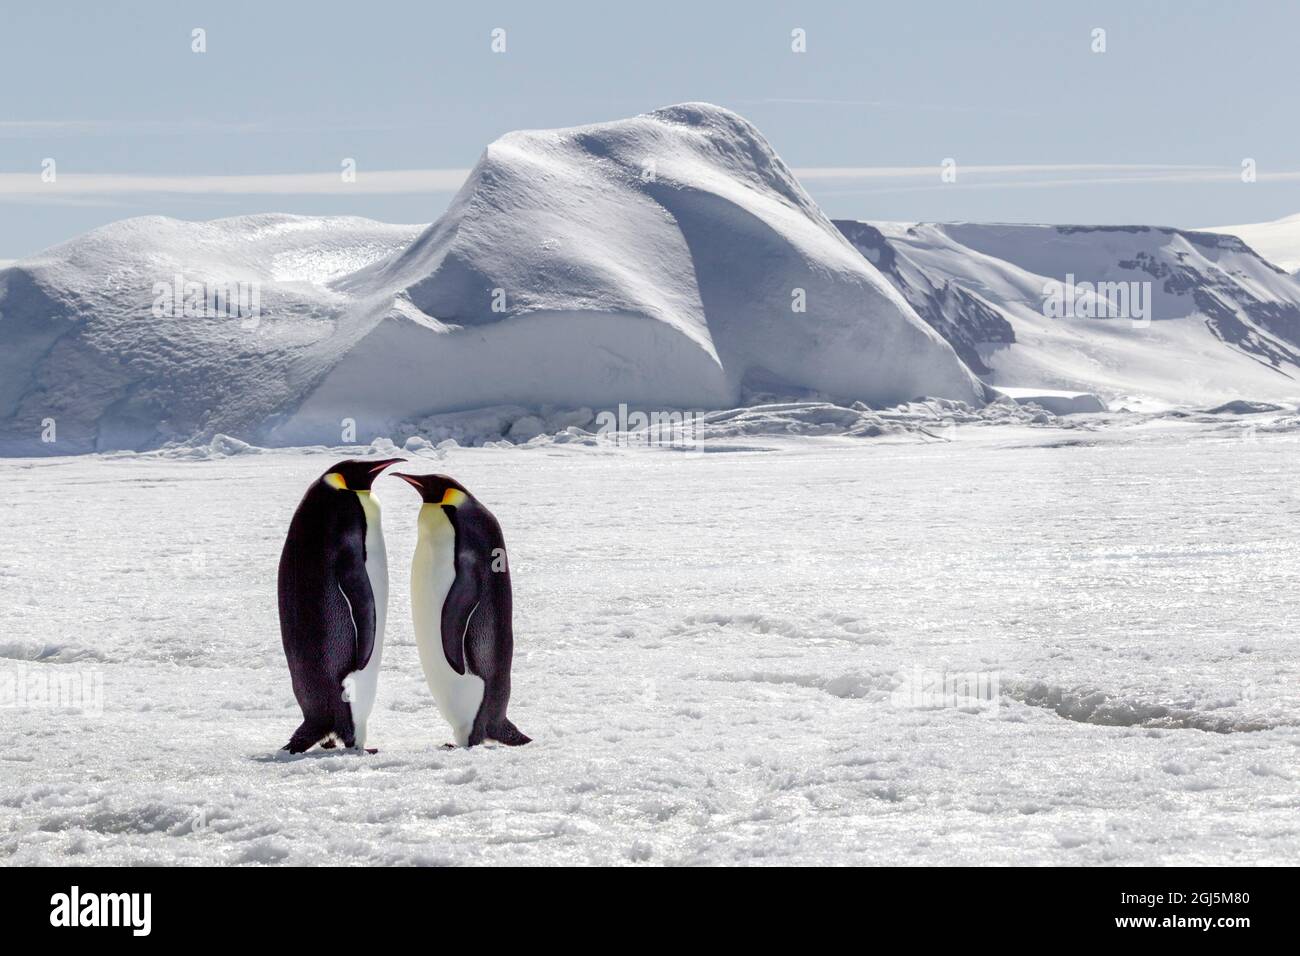 Antartide, Snow Hill. Due pinguini imperatore si erigono insieme nel paesaggio ghiacciato. Foto Stock